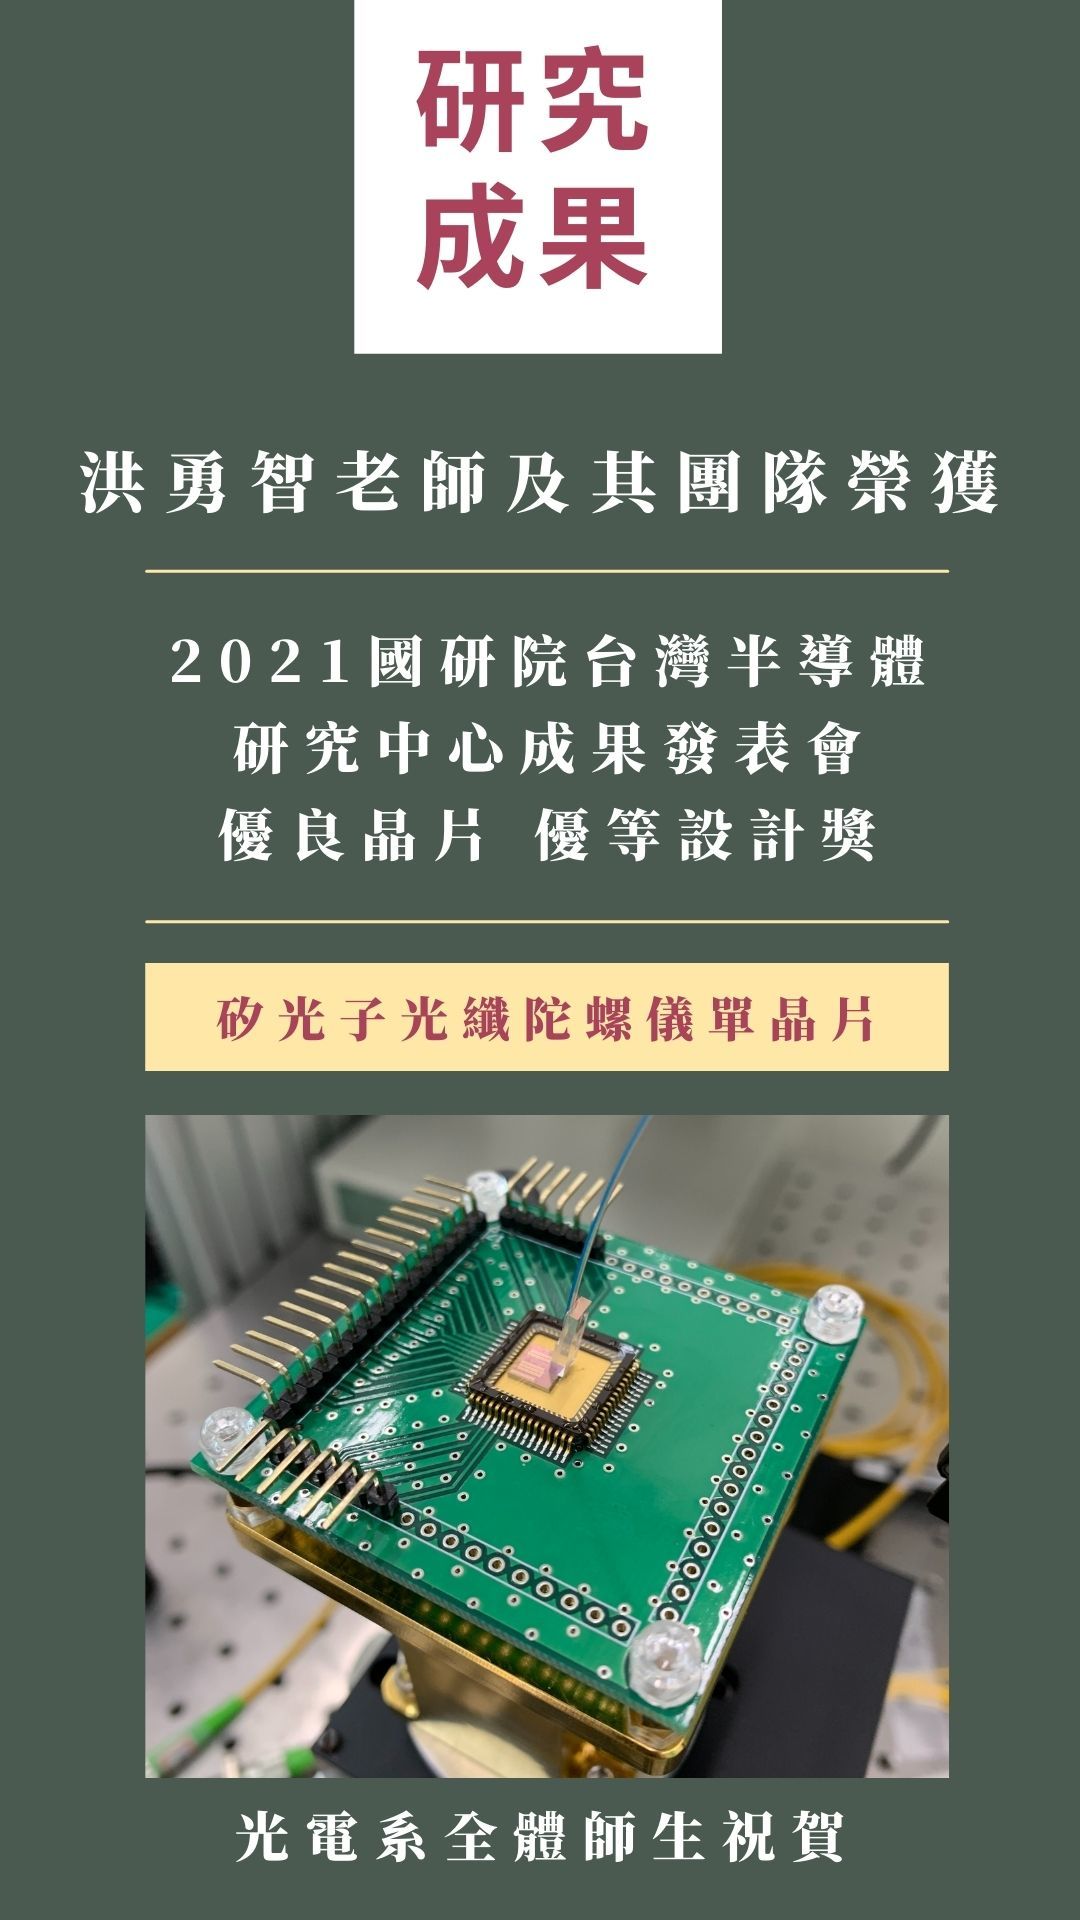 2021 國研院台灣半導體研究中心成果發表會優良晶片優等設計獎